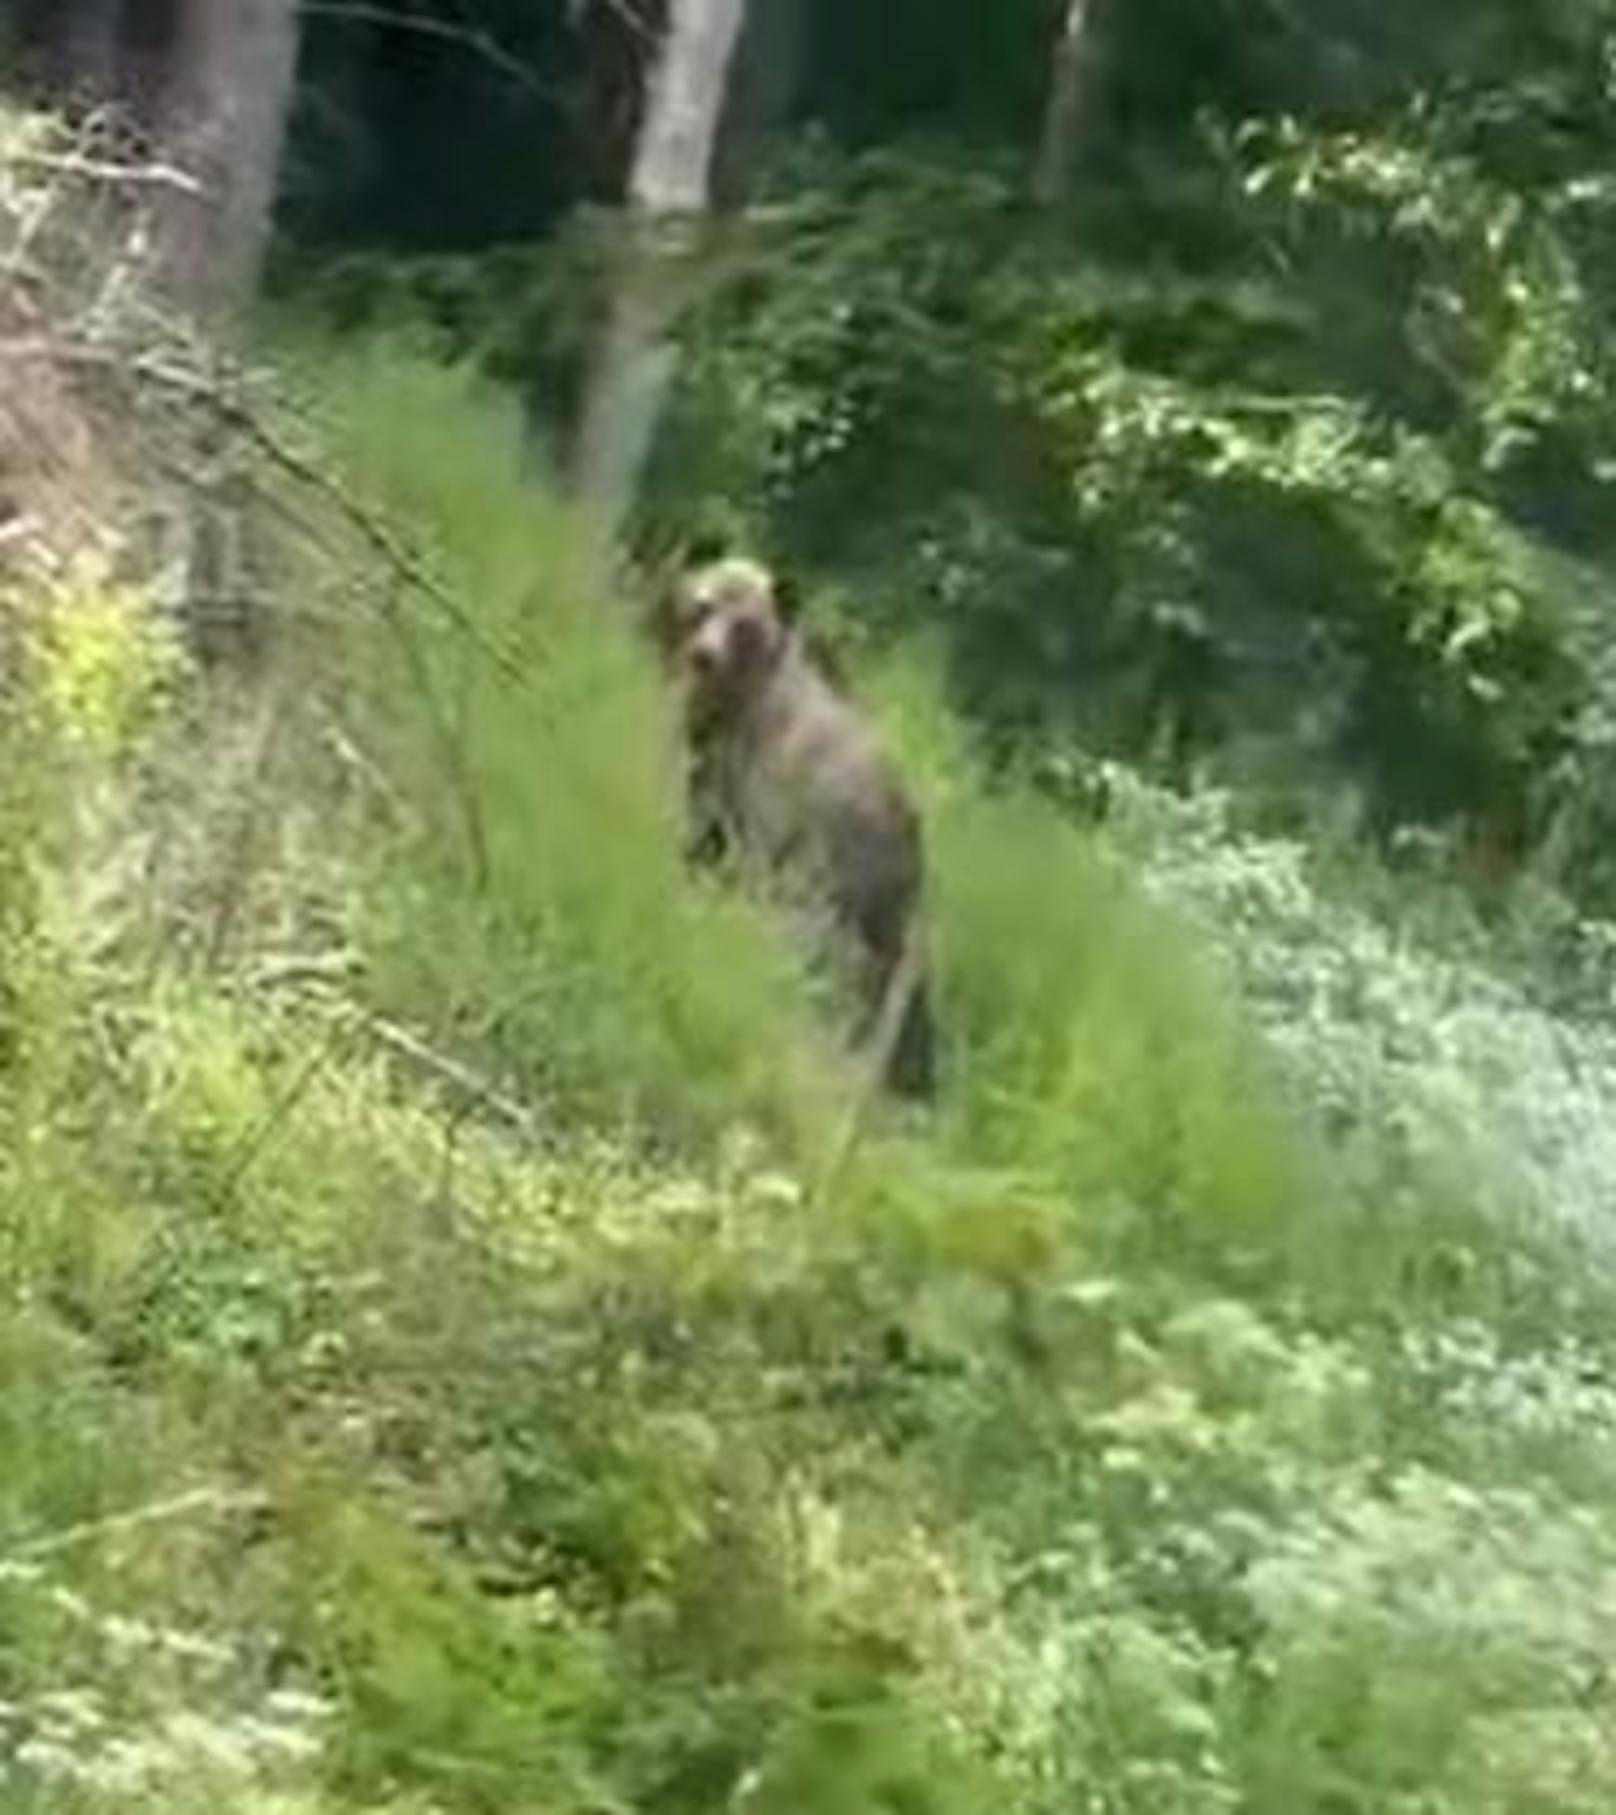 Der Bär soll im Grenzgebiet von Neunkirchen und Wr. Neustadt-Land gesichtet worden sein. Das Video ist aber nicht in NÖ gemacht.